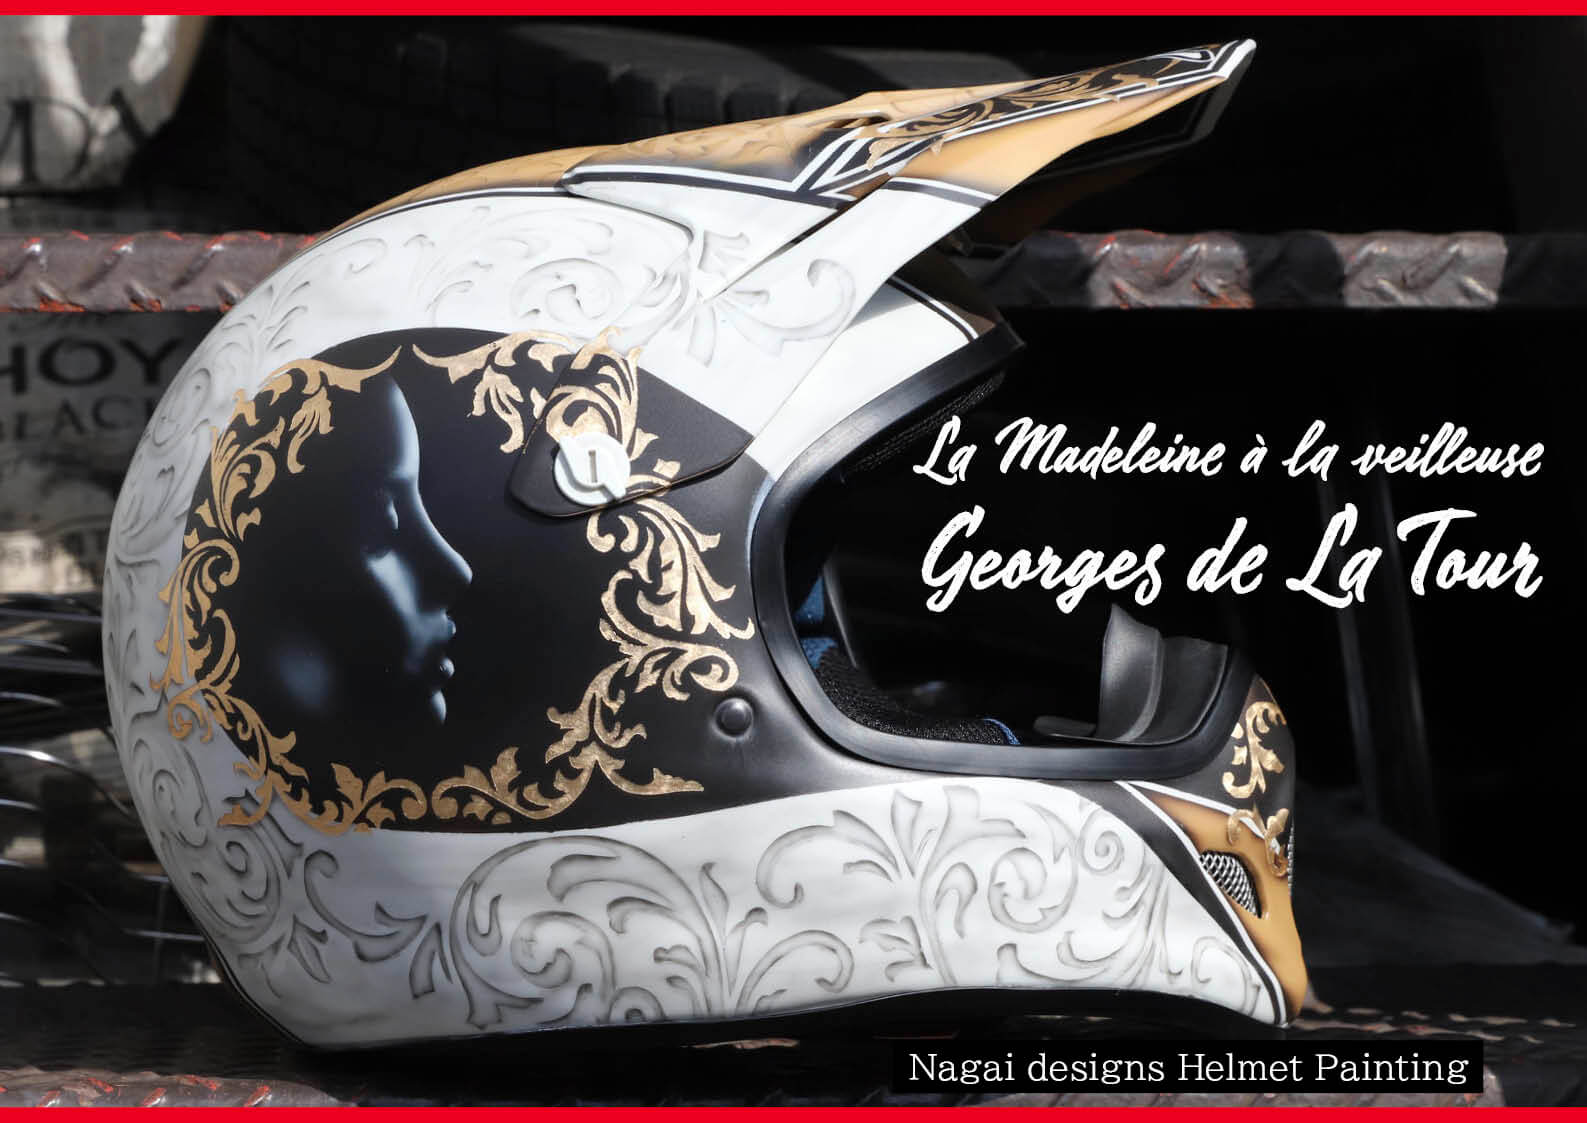 17世紀前半、フランスで活躍した巨匠「ジョルジュ・ド・ラ・トゥール」が描いた「灯火の前のマクダラのマリア」をモチーフにした 「ナガイデザイン 」の新作ヘルメット　（水上バイク）ジェットスキー